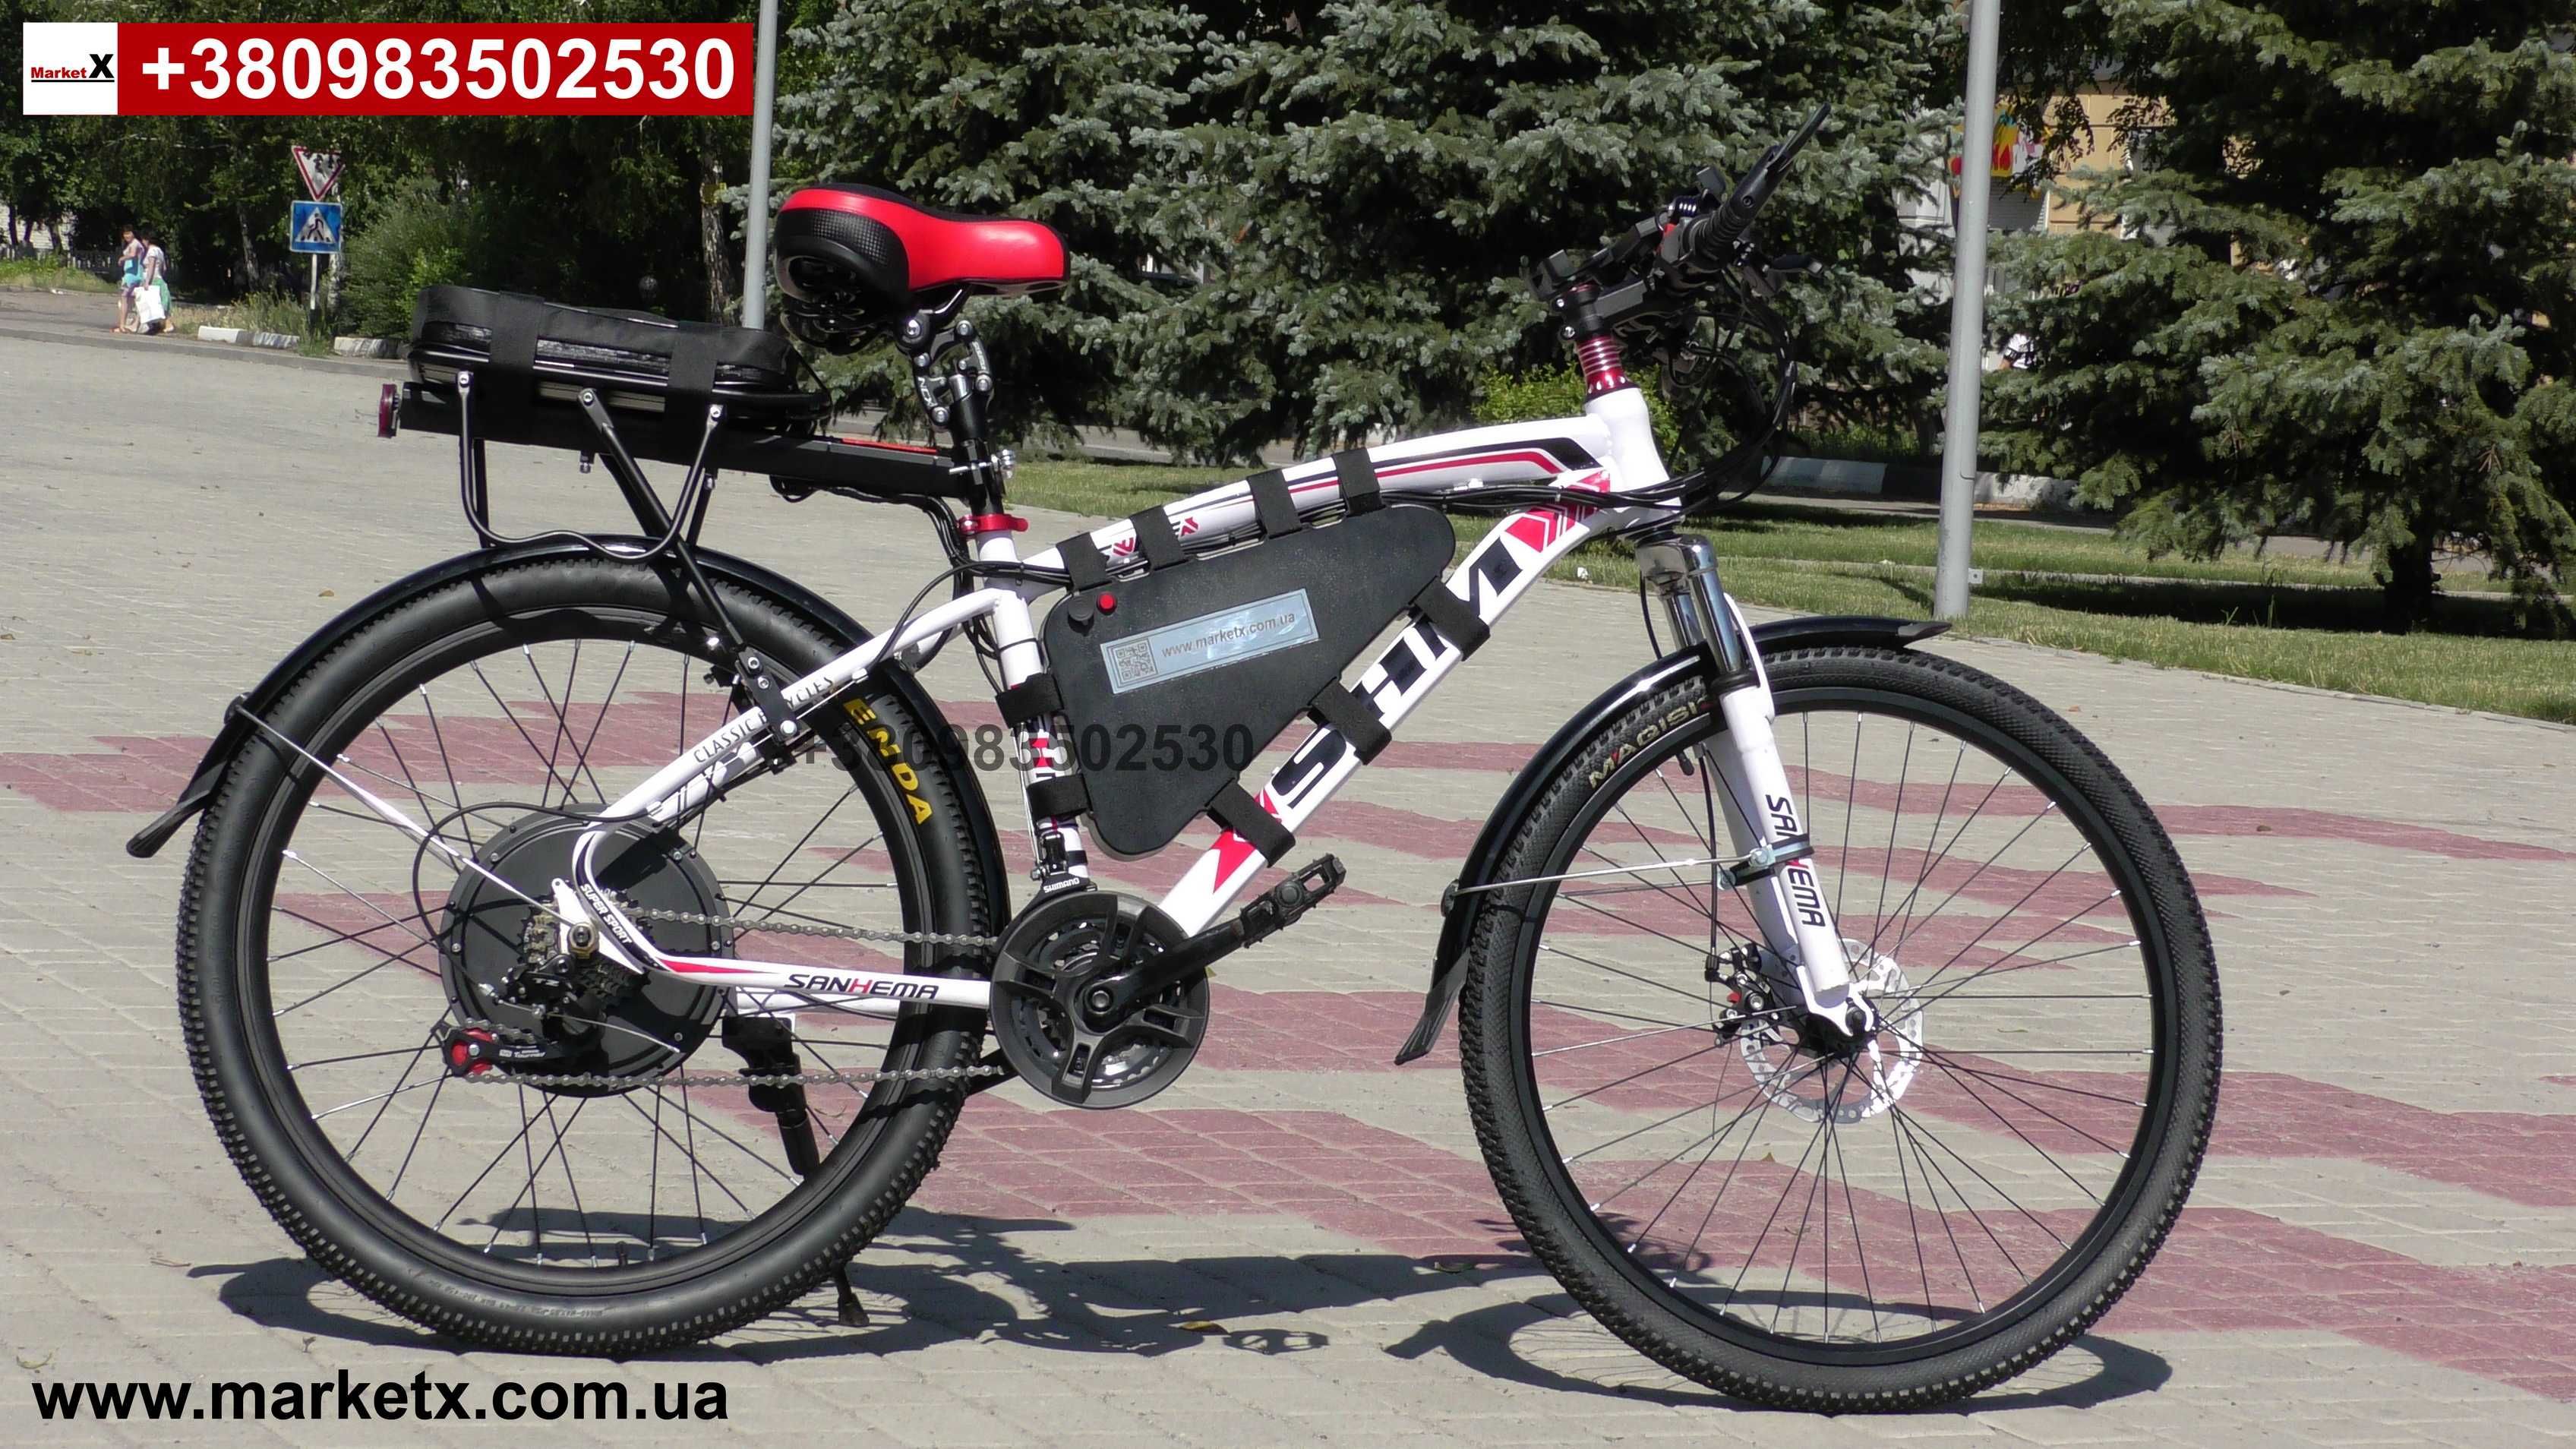 Полноразмерные вело крылья щитки на велосипед 26 дюймов электровелосип